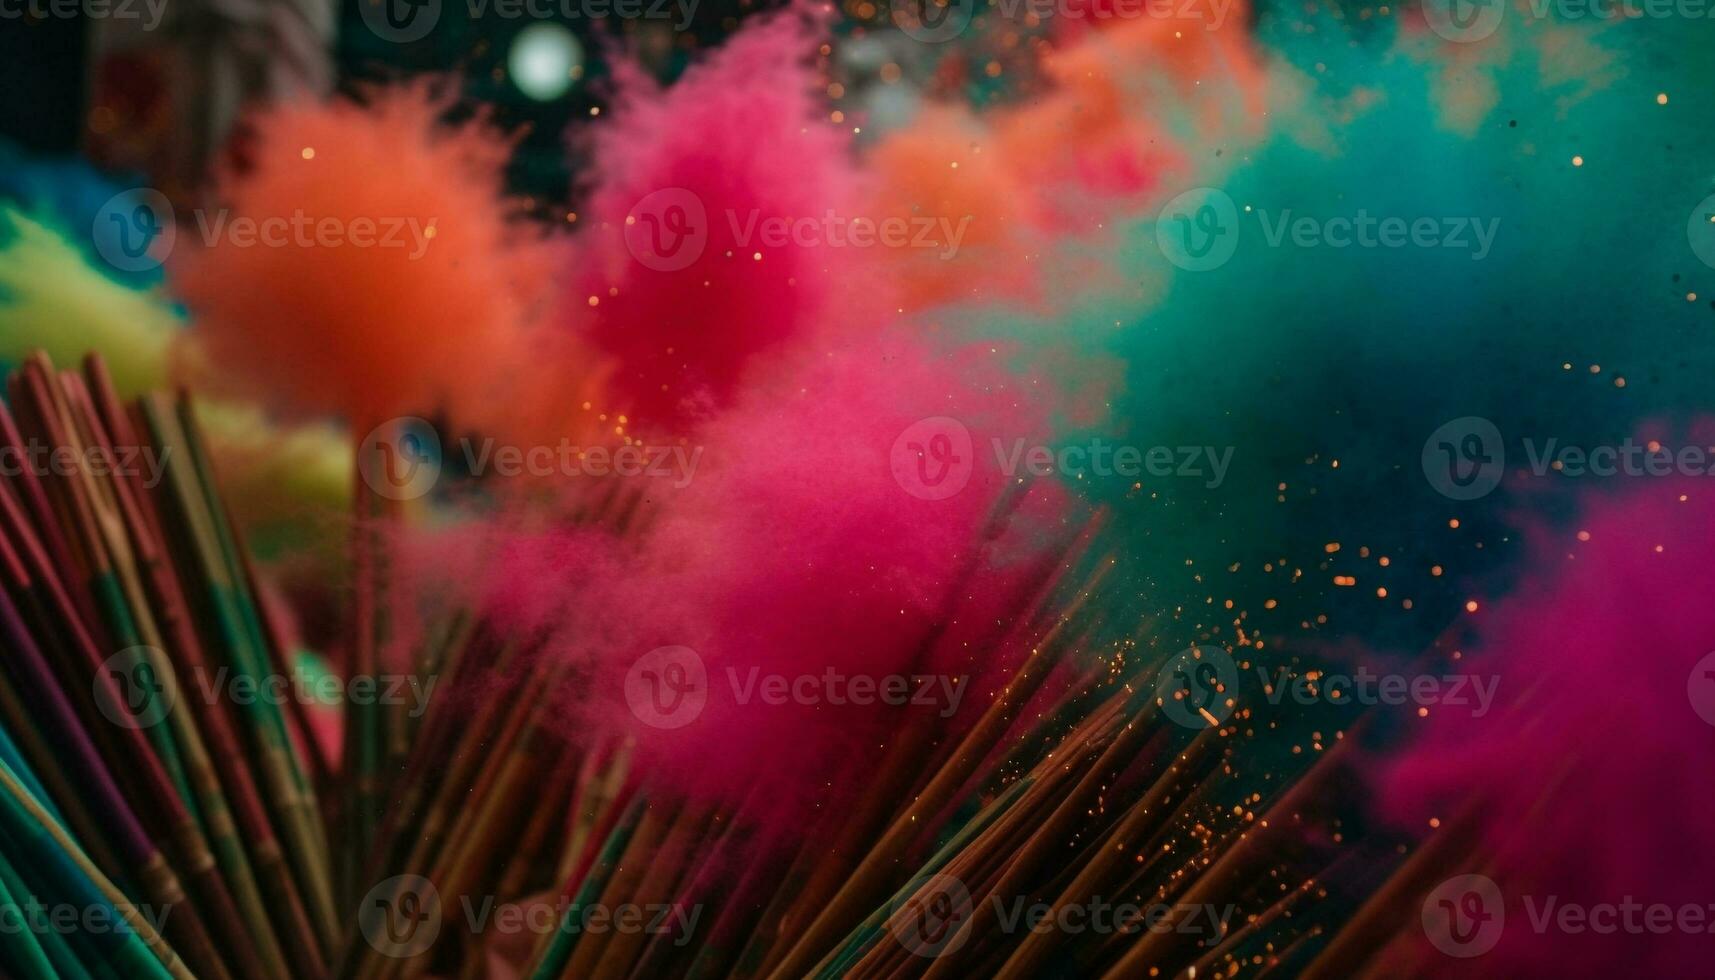 176609 imágenes de Fondos explosivos  Imágenes fotos y vectores de stock   Shutterstock